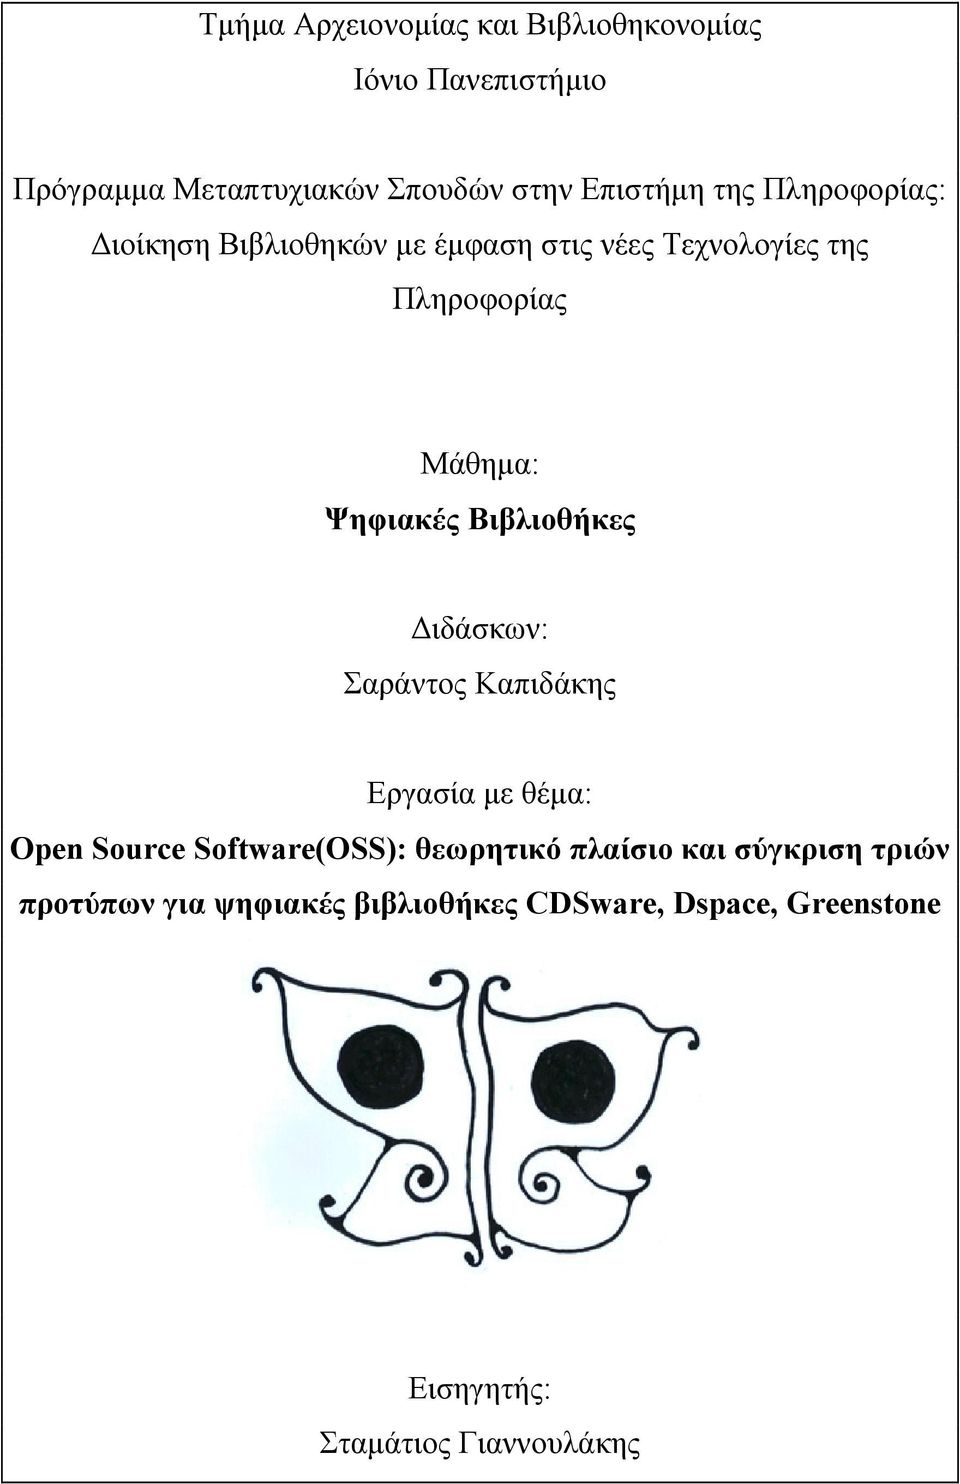 Βιβλιοθήκες ιδάσκων: Σαράντος Καπιδάκης Εργασία µε θέµα: Open Source Software(OSS): θεωρητικό πλαίσιο και